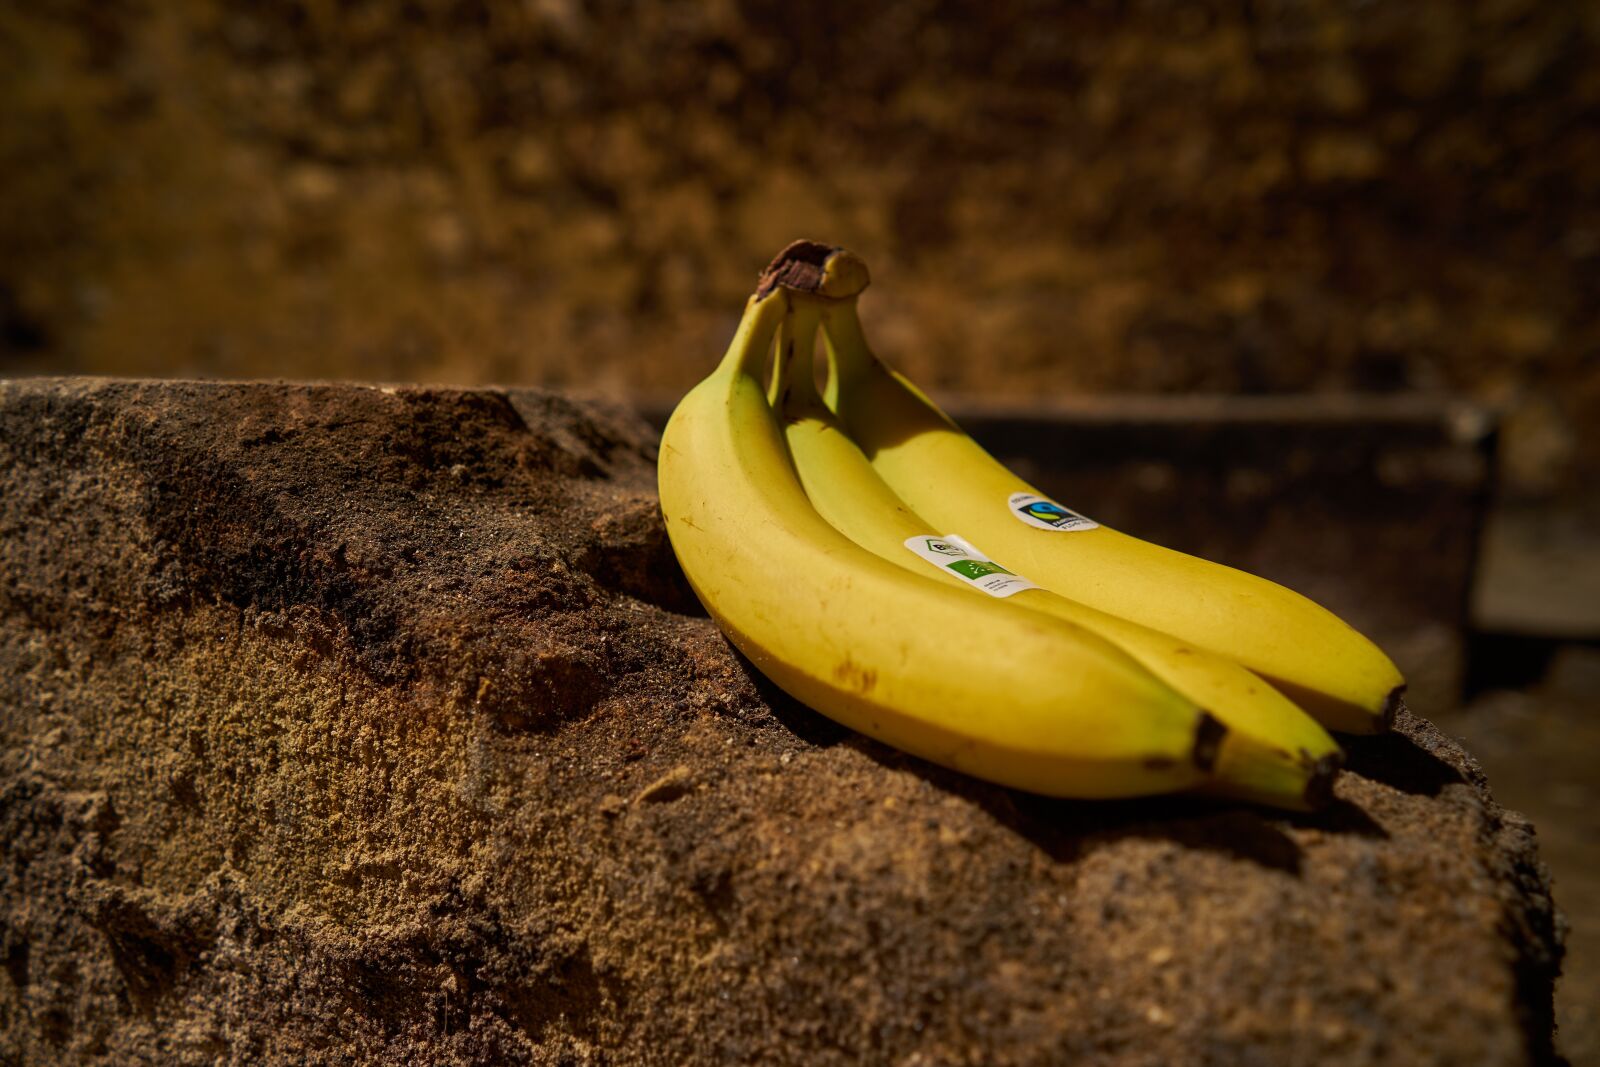 Sony FE 28mm F2 sample photo. Banana, fruit, food photography